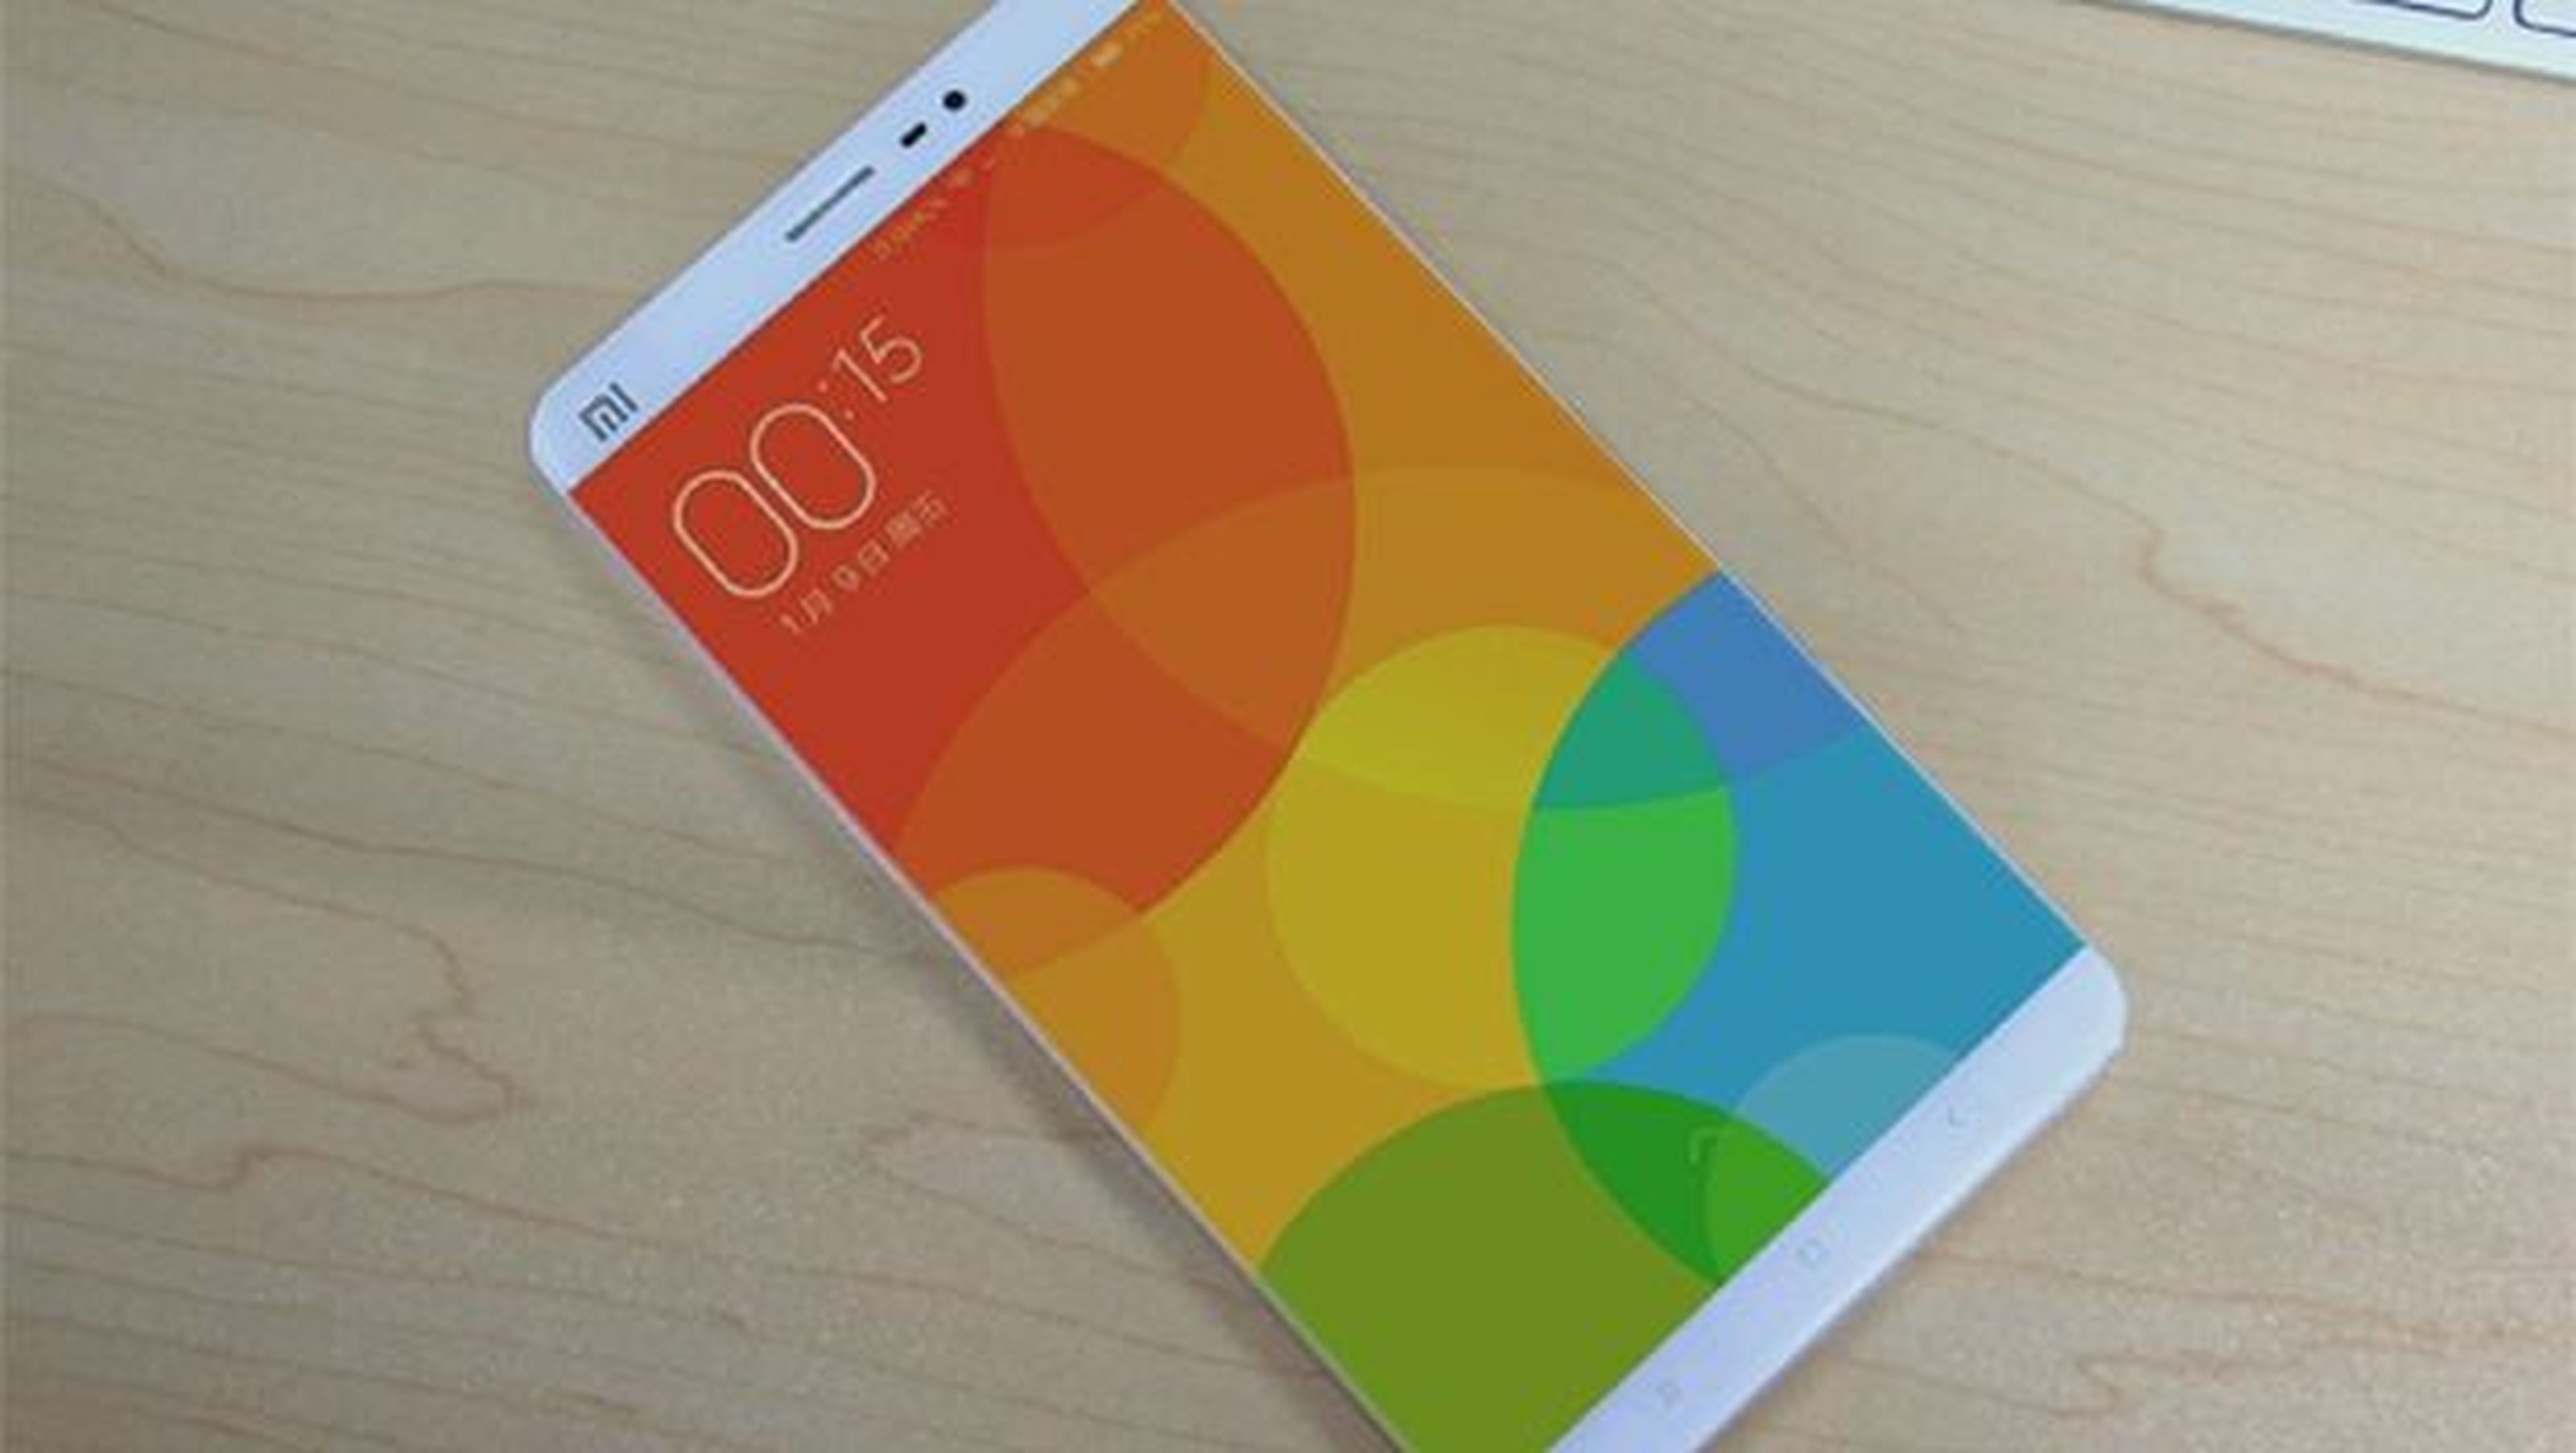 Xiaomi Mi5, nuevas fotos filtradas antes de su lanzamiento